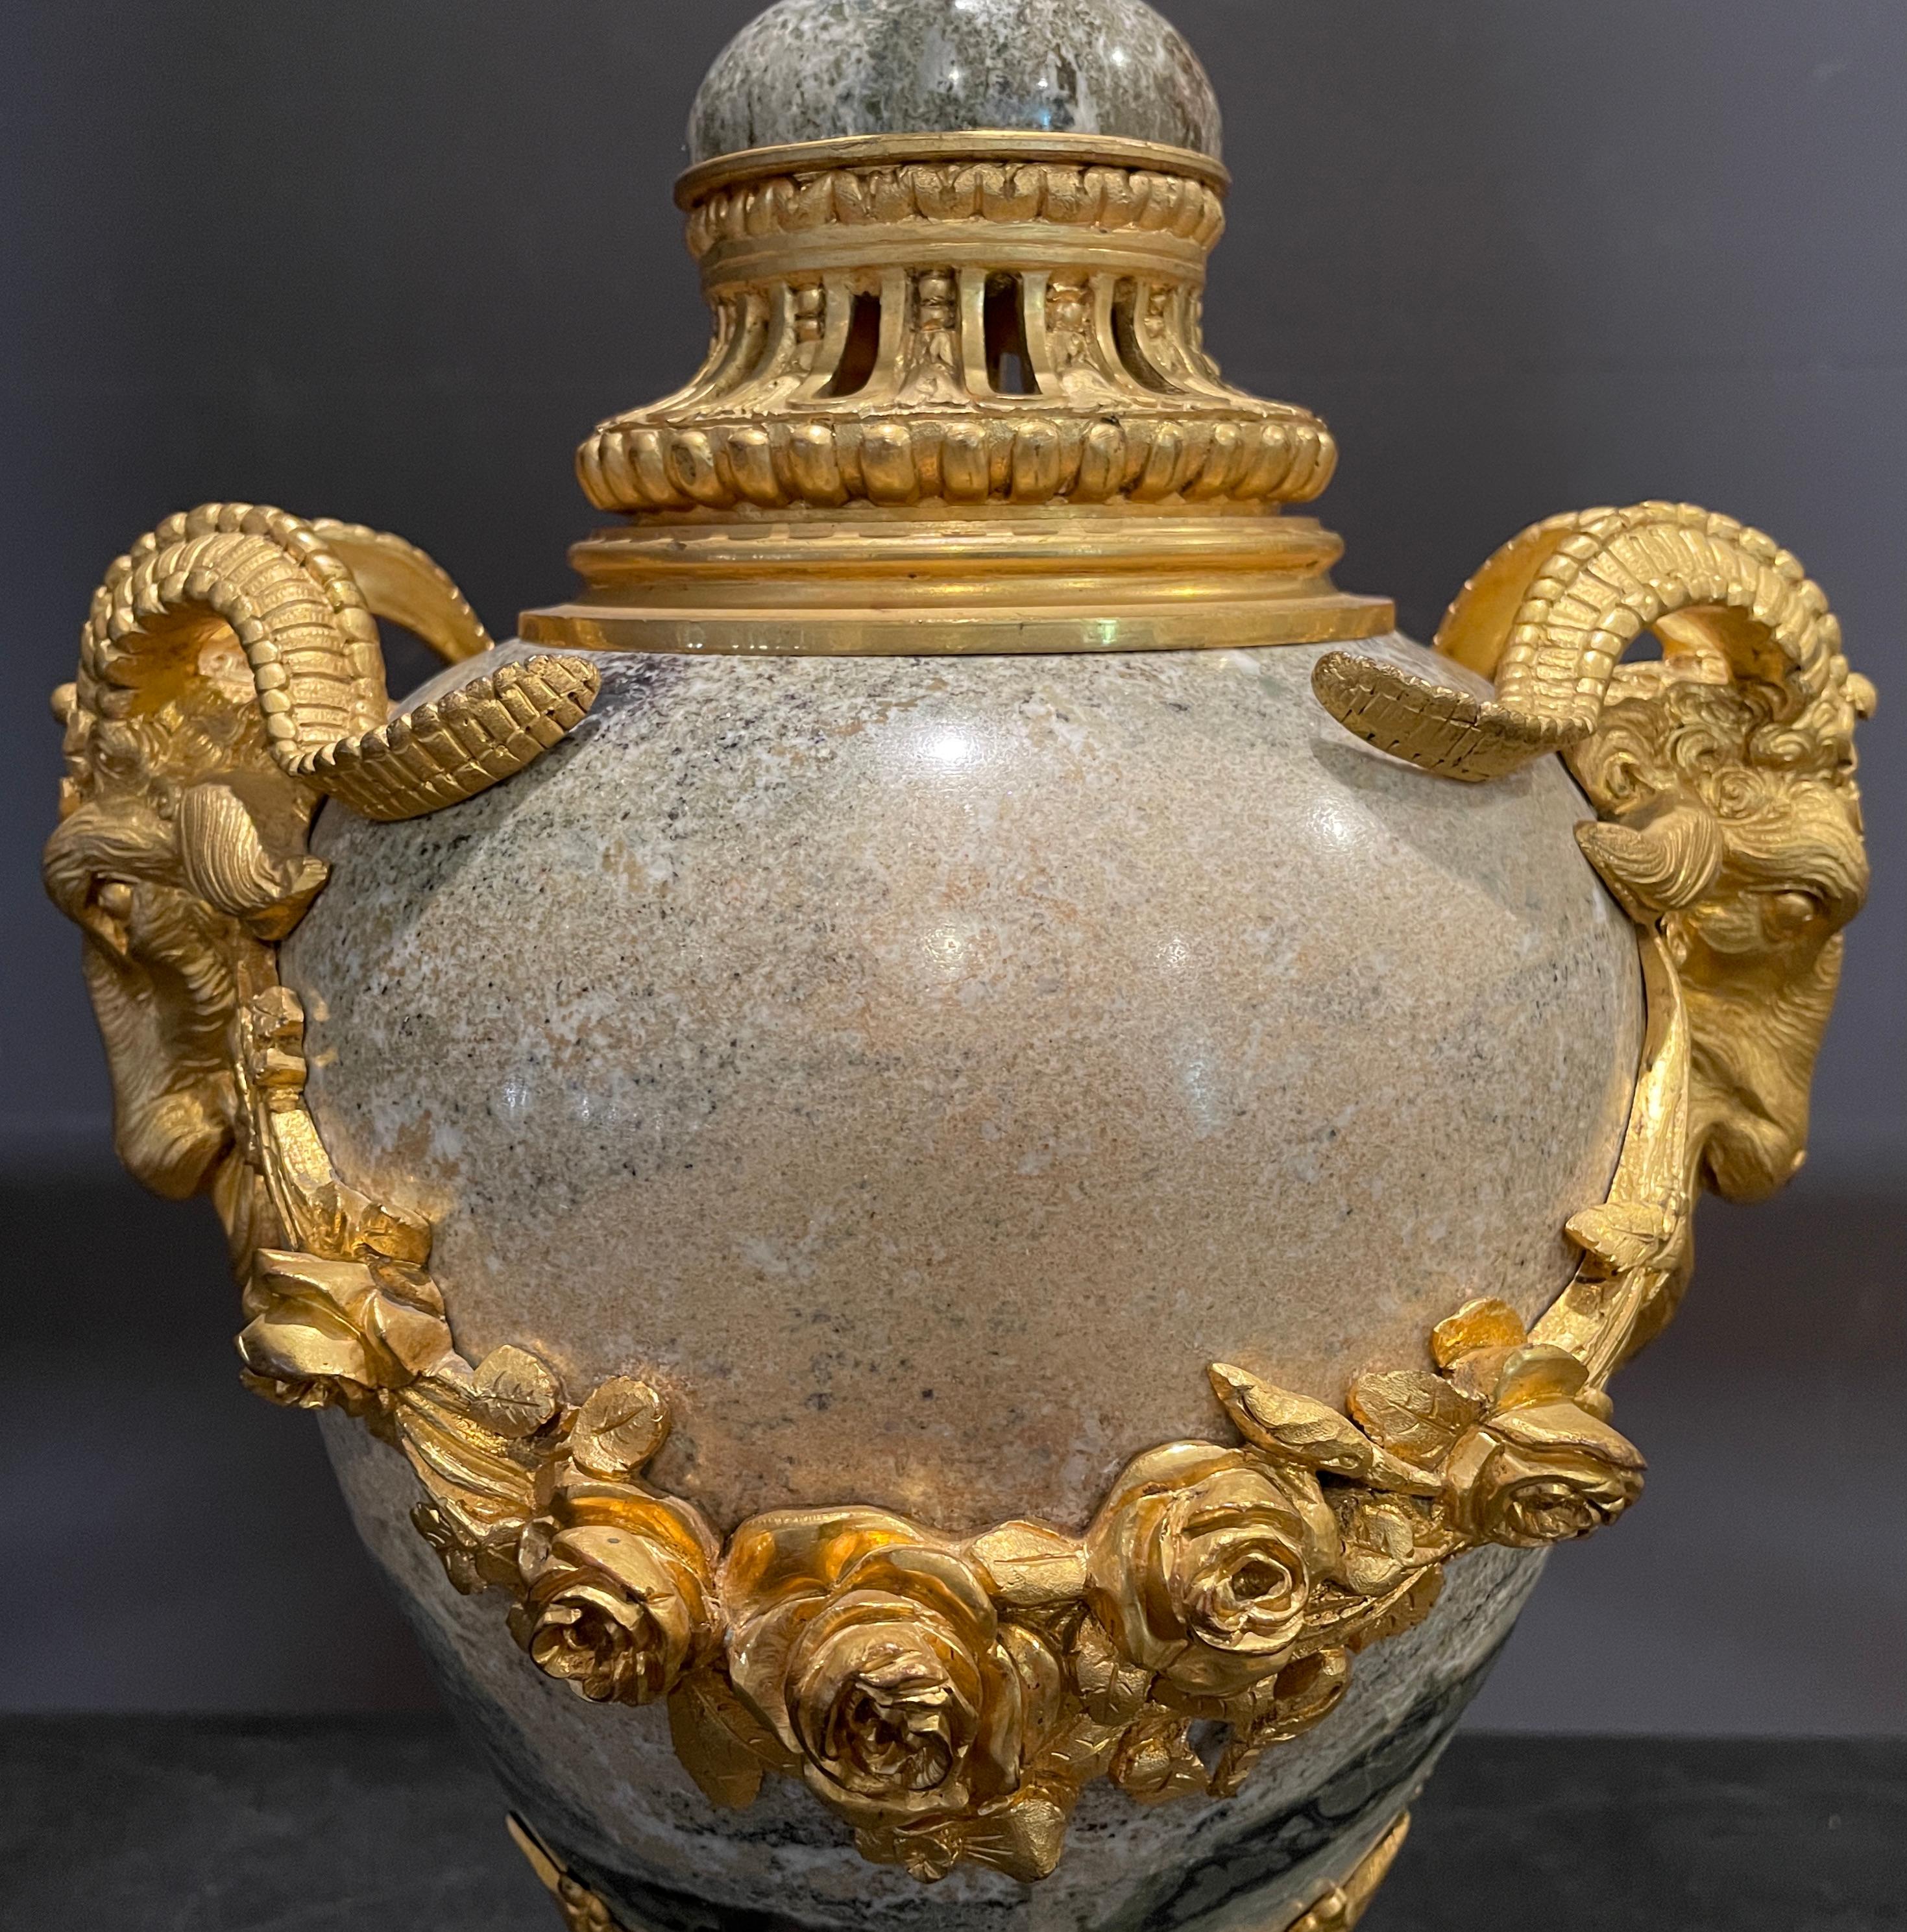 Lampe en marbre montée en bronze doré de style Louis XVI du XIXe siècle, avec des détails en forme de tête de bélier et de rosace.
19